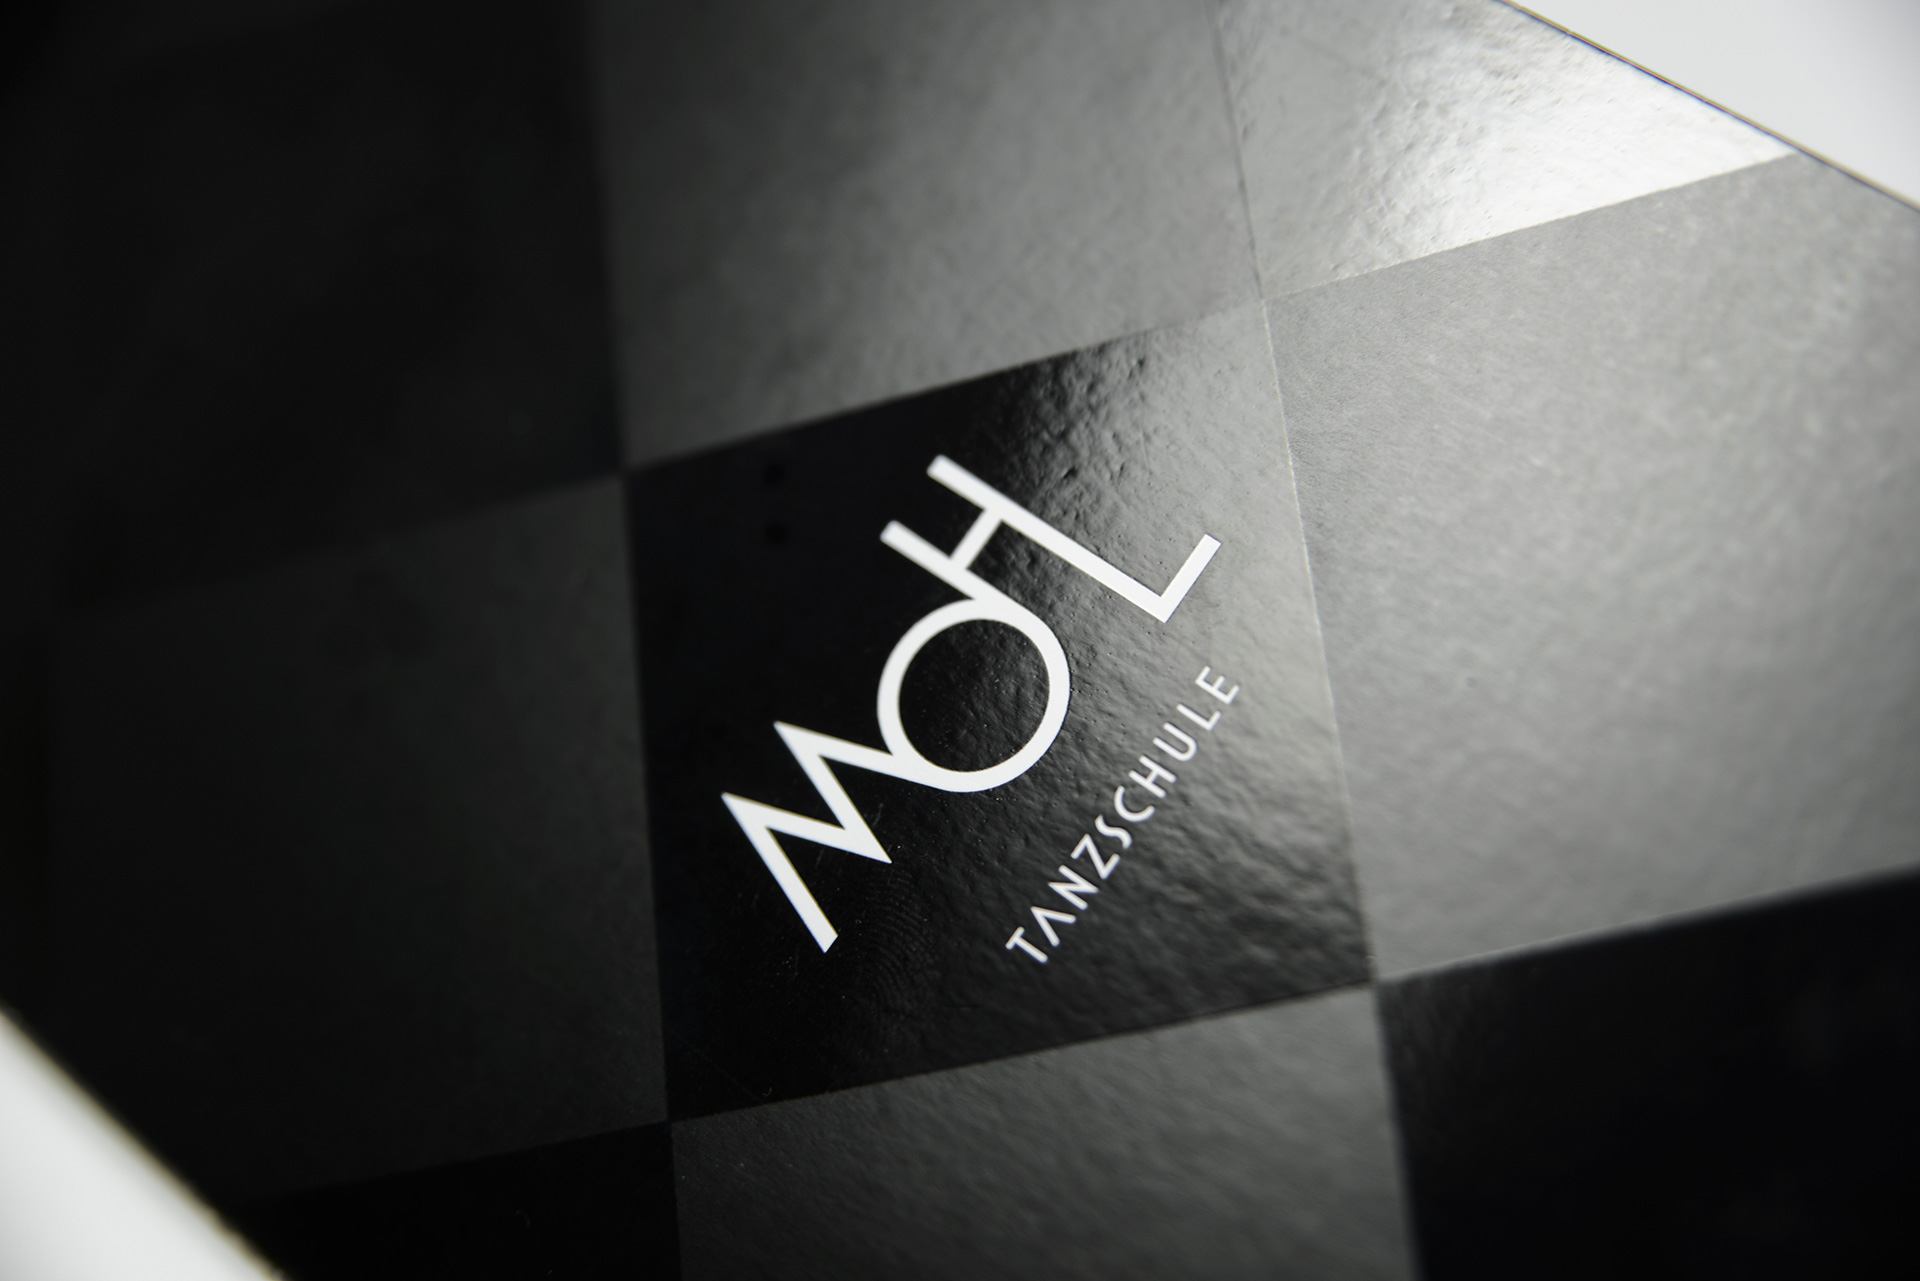 Logo Design (Corporate Design) - Tanzschule Mohl